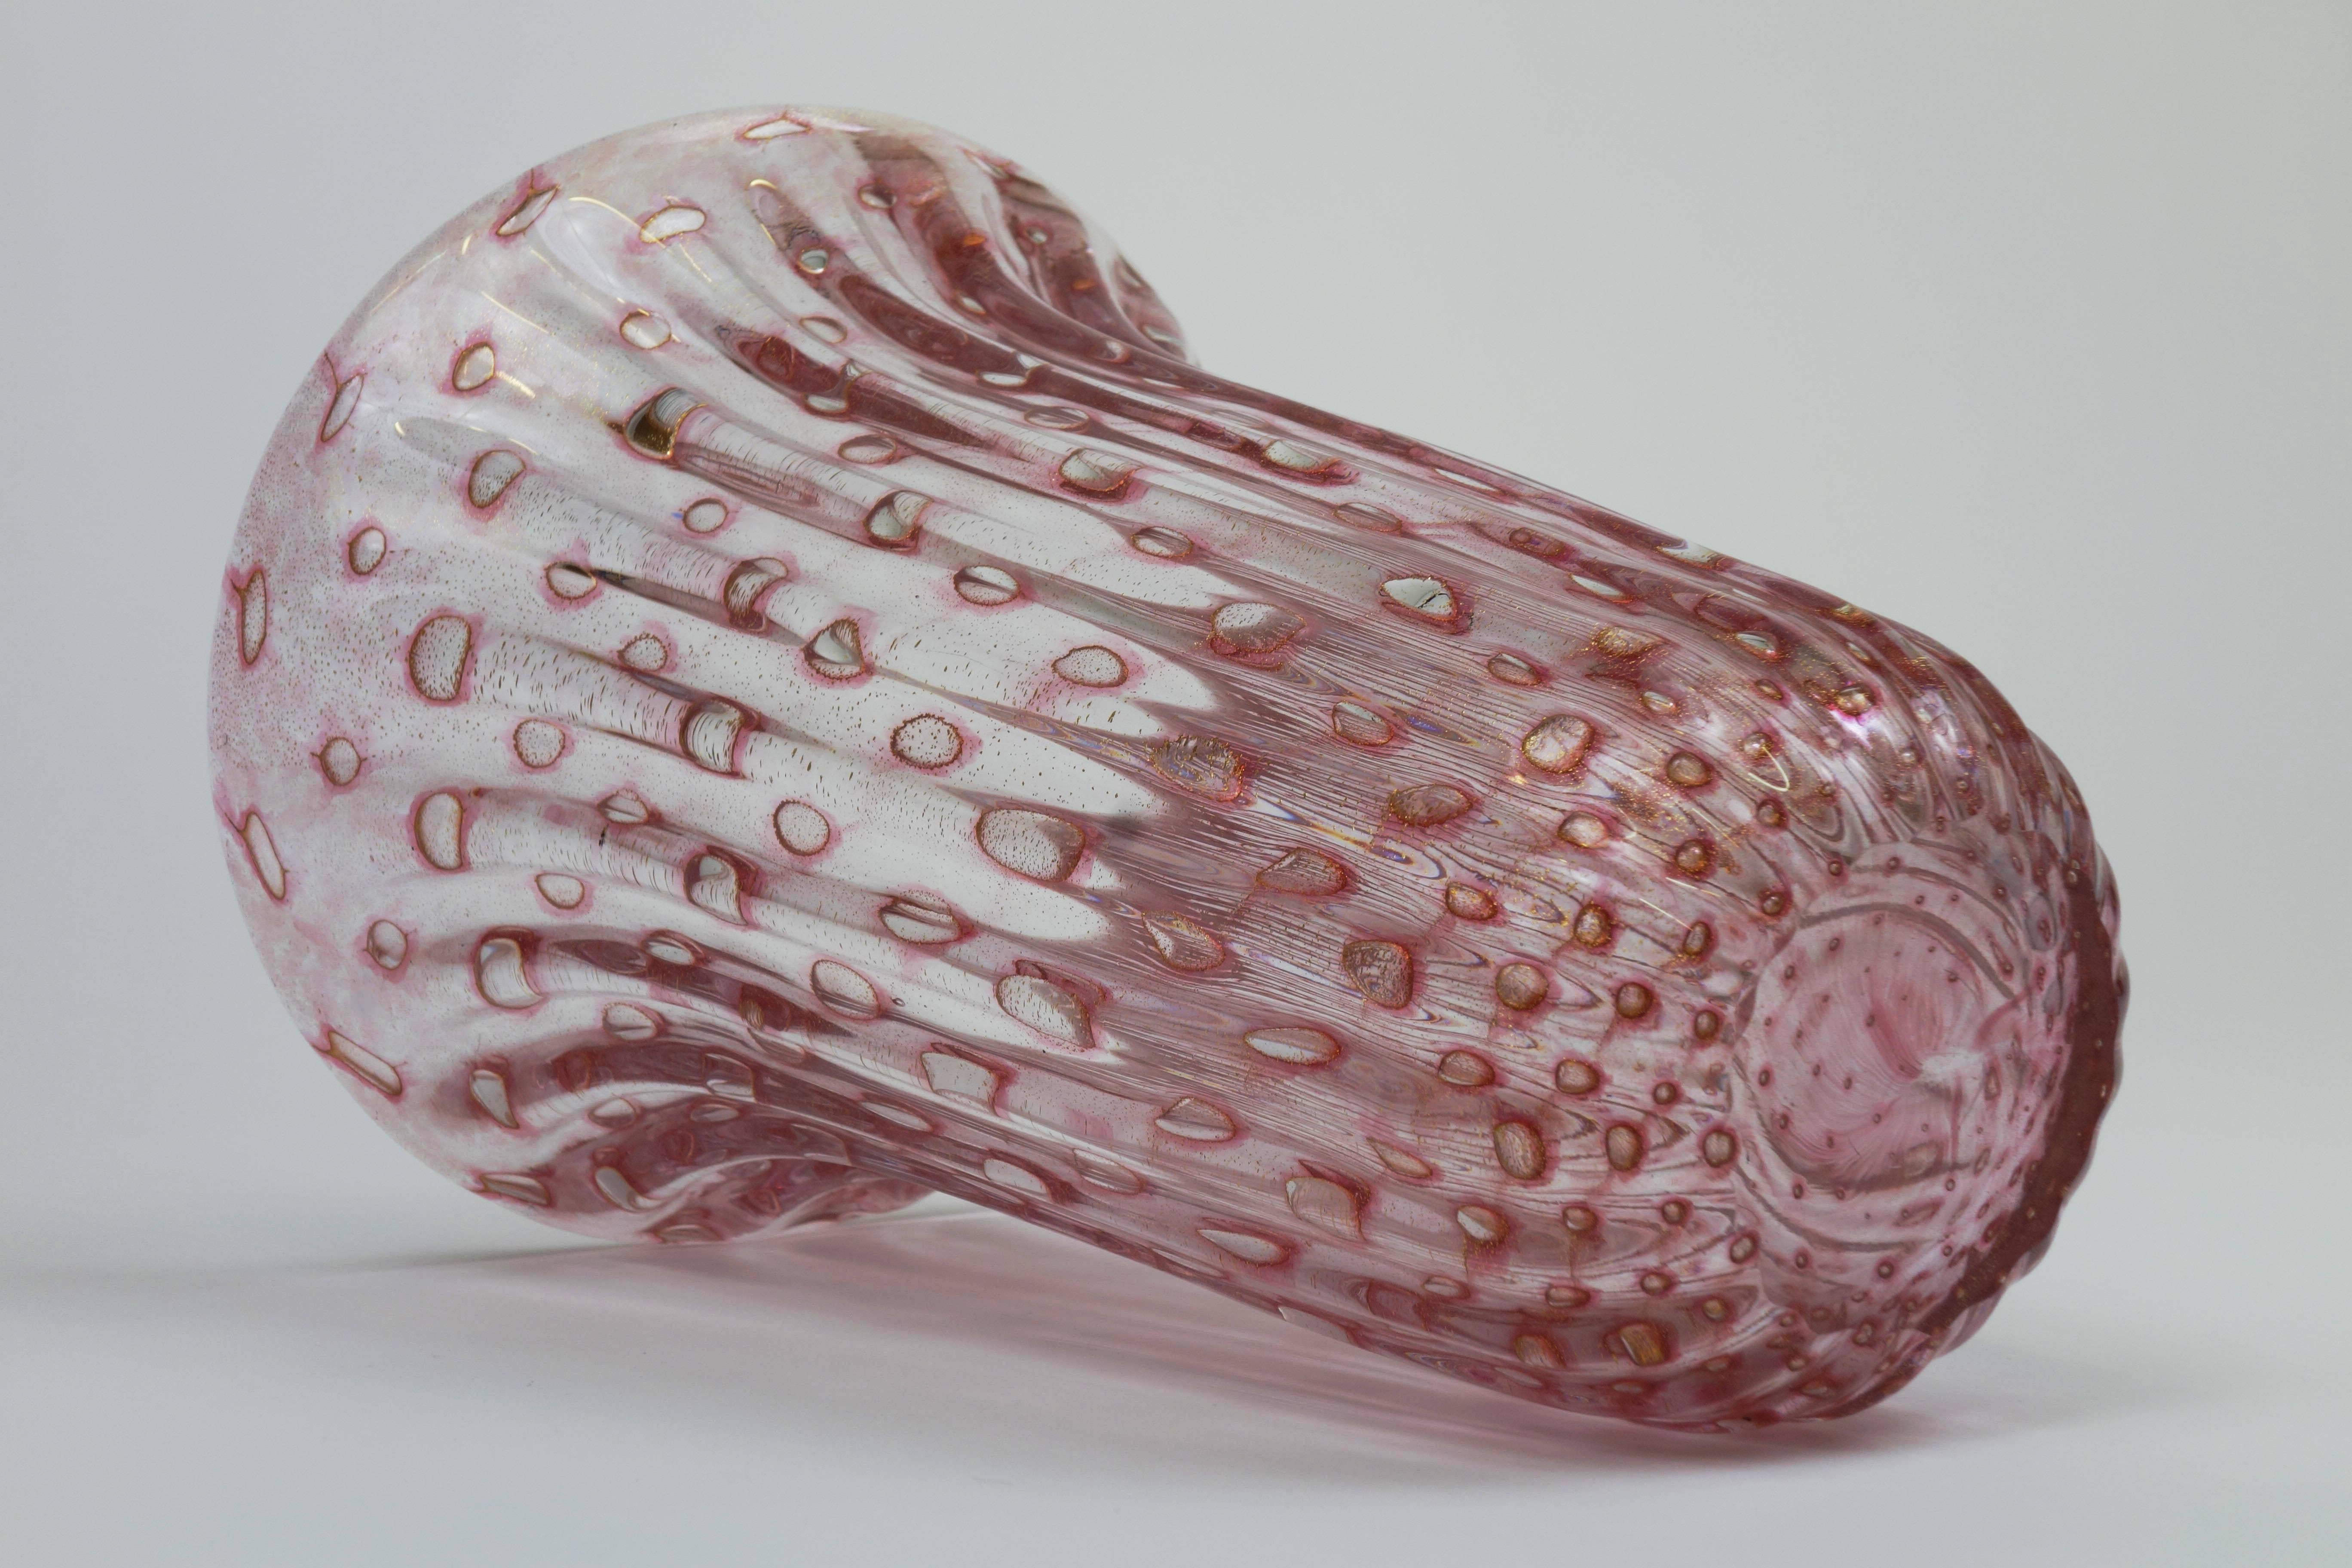 Vase aus mundgeblasenem, kanneliertem Murano-Glas von Fratelli Toso, Murano, Italien, 1950er Jahre. Rosafarbener Körper mit schillernden Luftblaseneinschlüssen und 24-karätigem Polvera d'Oro-Gold. Ein Objekt, dessen Qualitäten auf den zweiten Blick